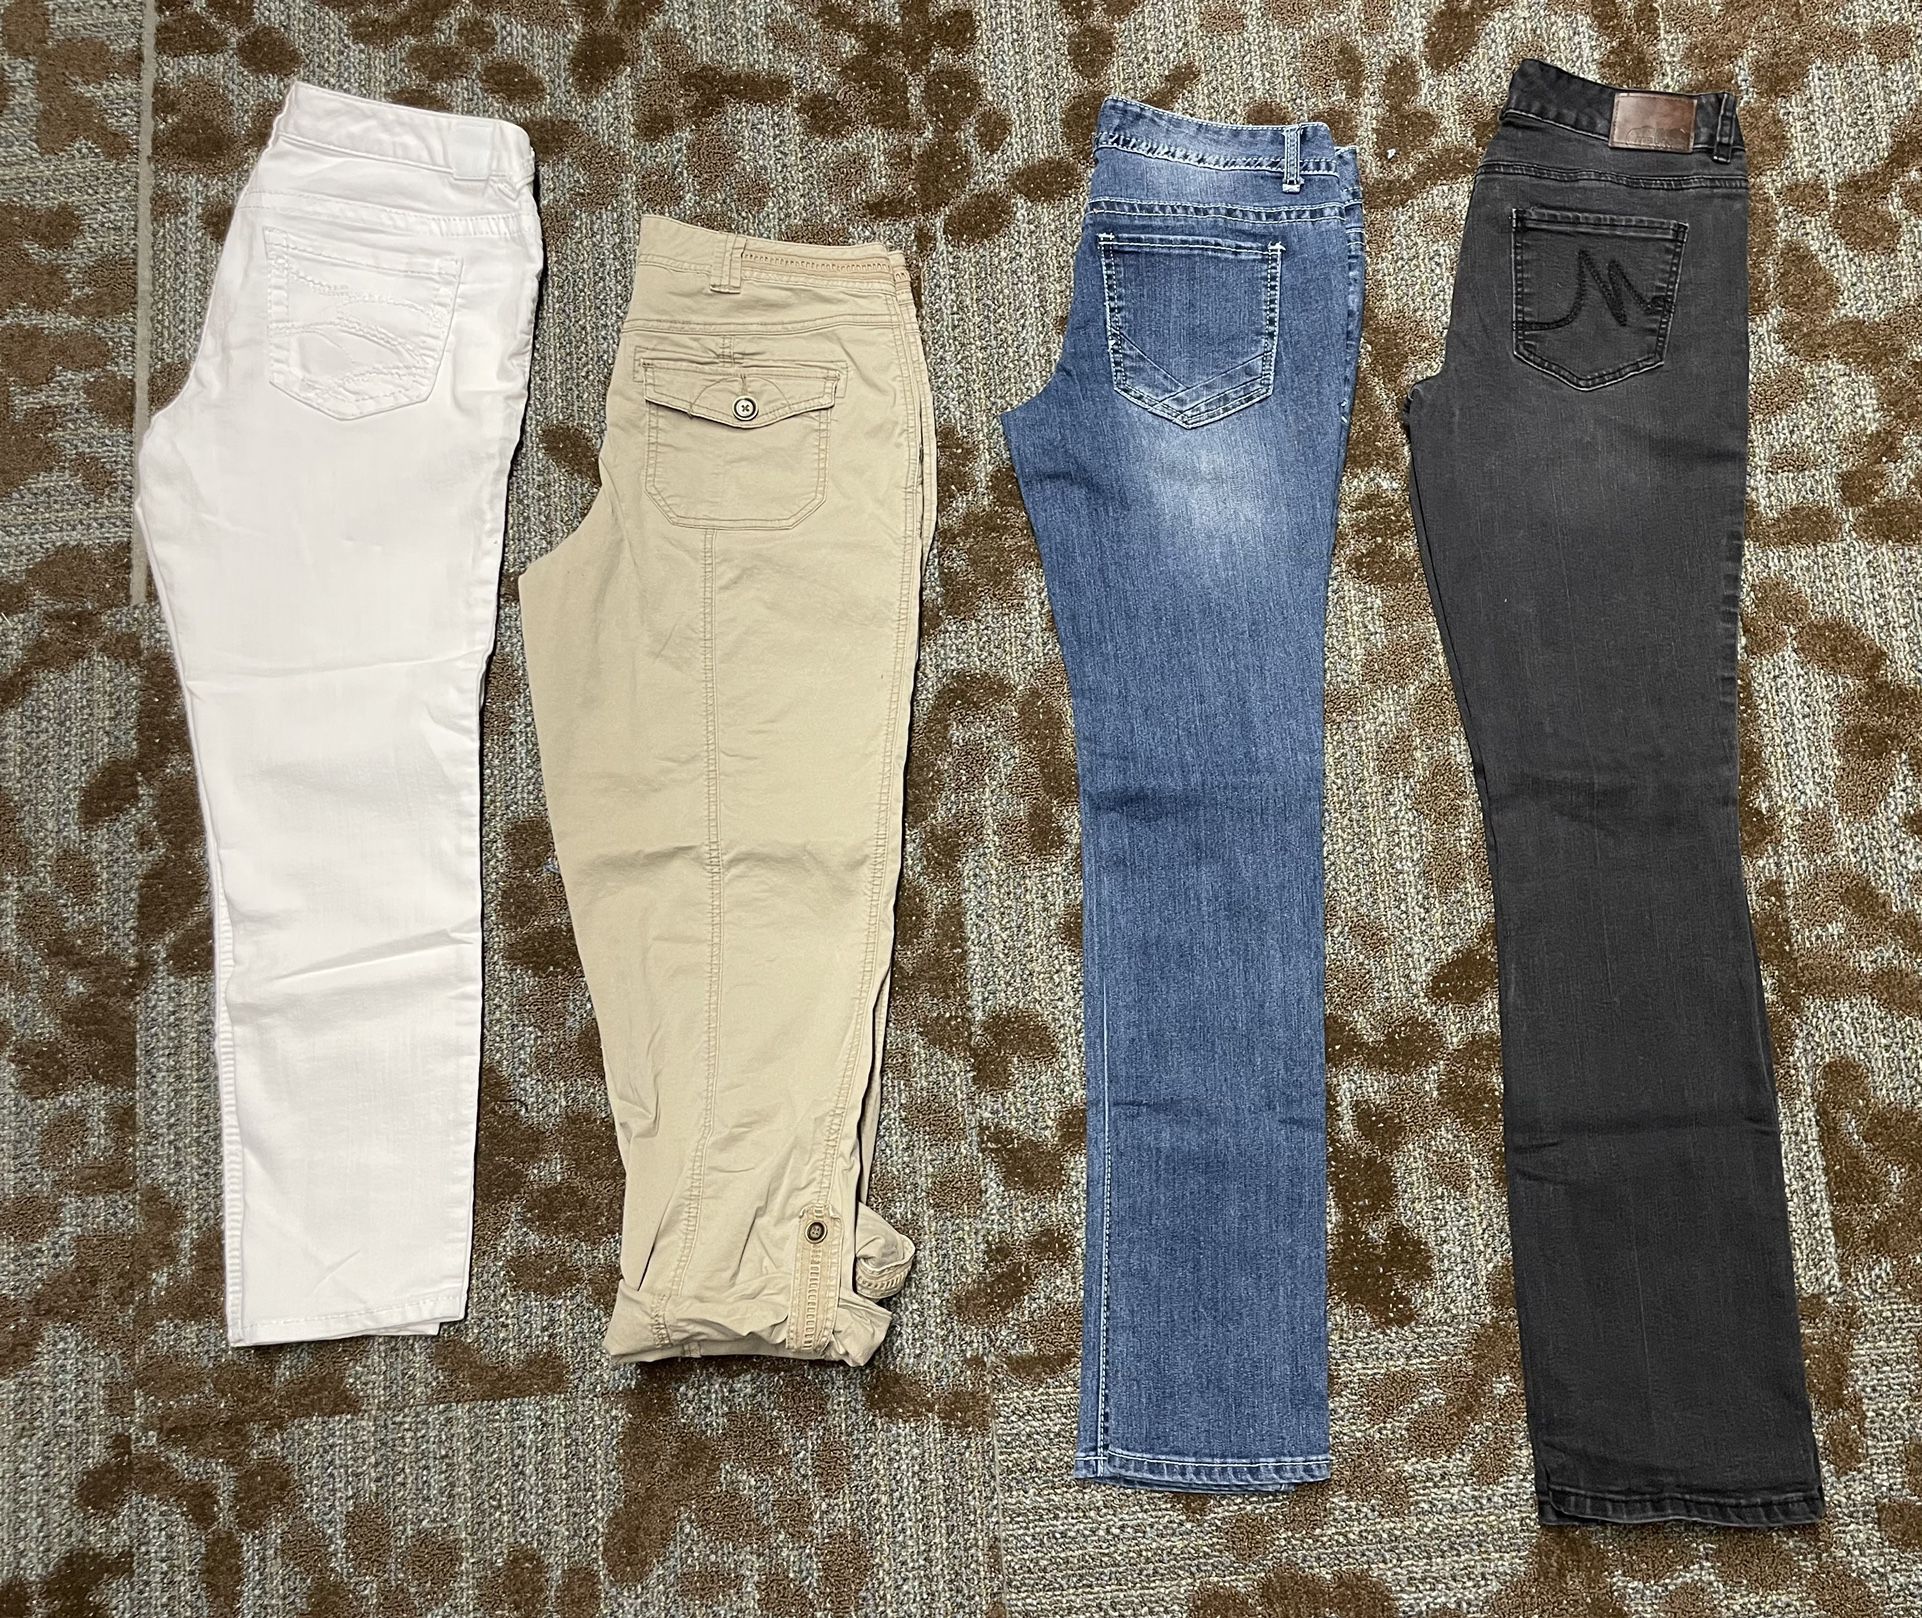 Women’s Size 9/10 Capris/jeans Bundle (4 Pair, Maurice’s/Rue 21)